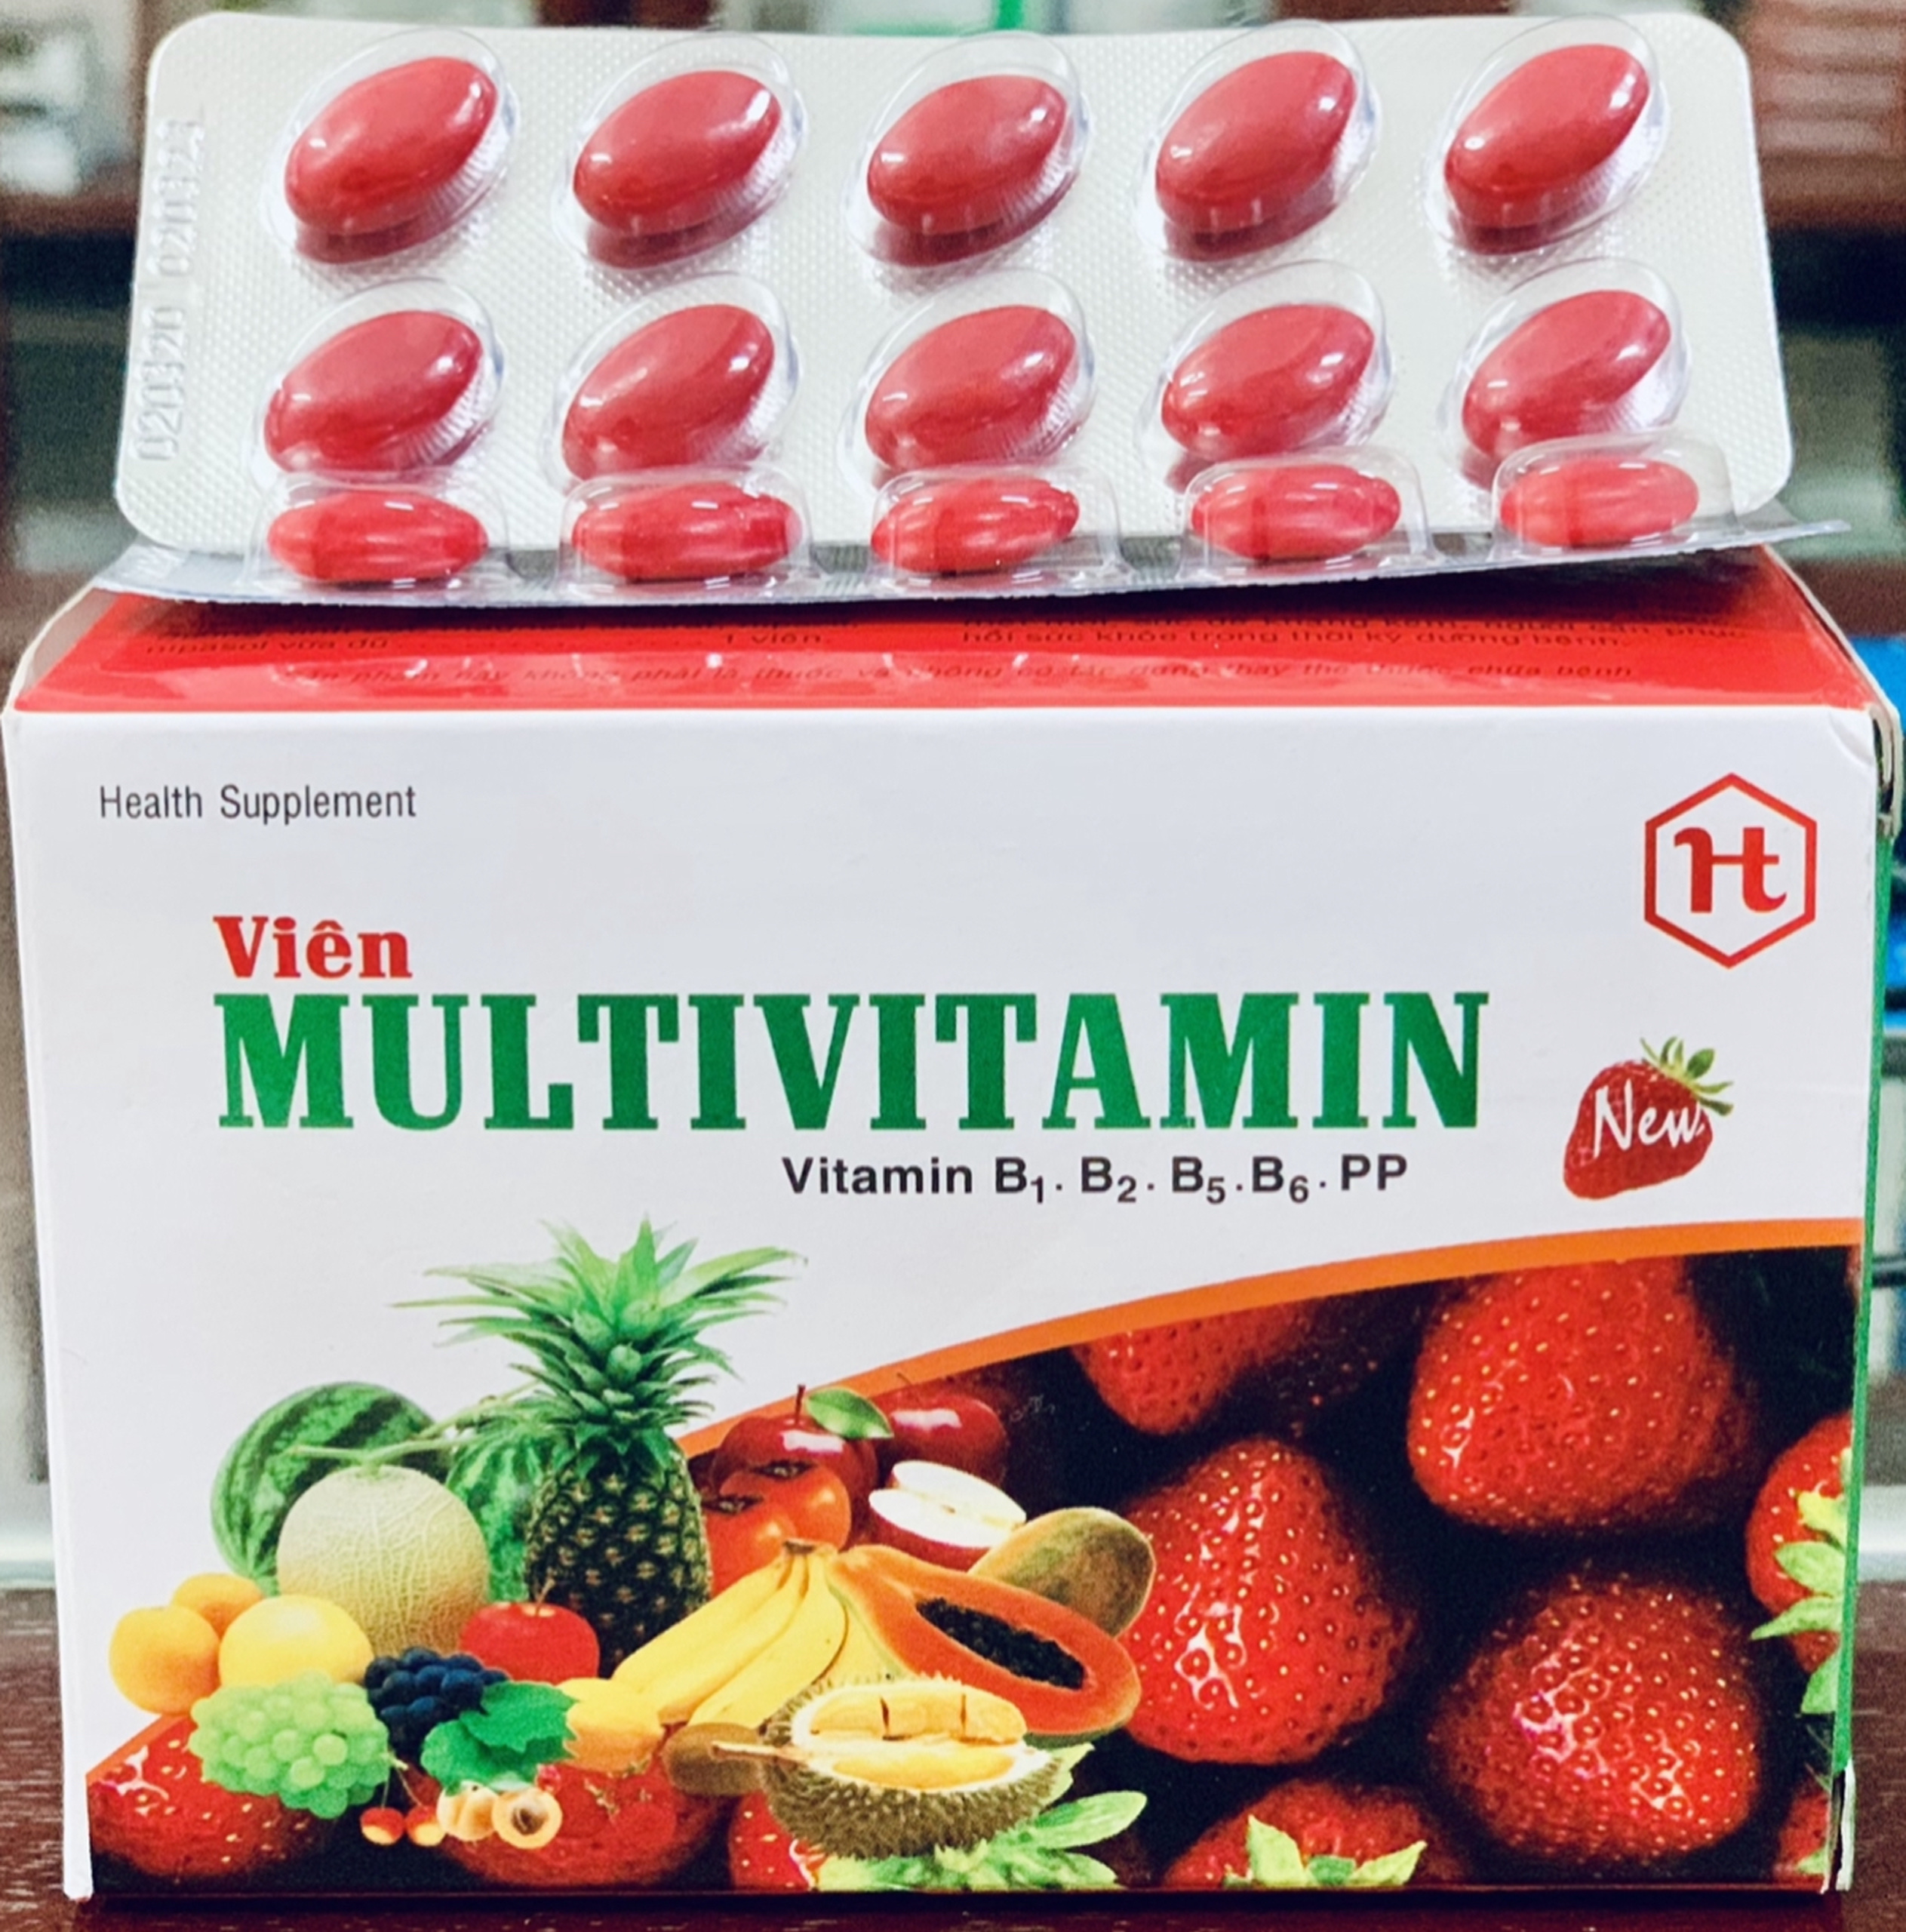 Multivitamin- Giúp bổ sung Vitamin B1, B2, B5,B6,PP, tăng cường bồi bổ sức khỏe